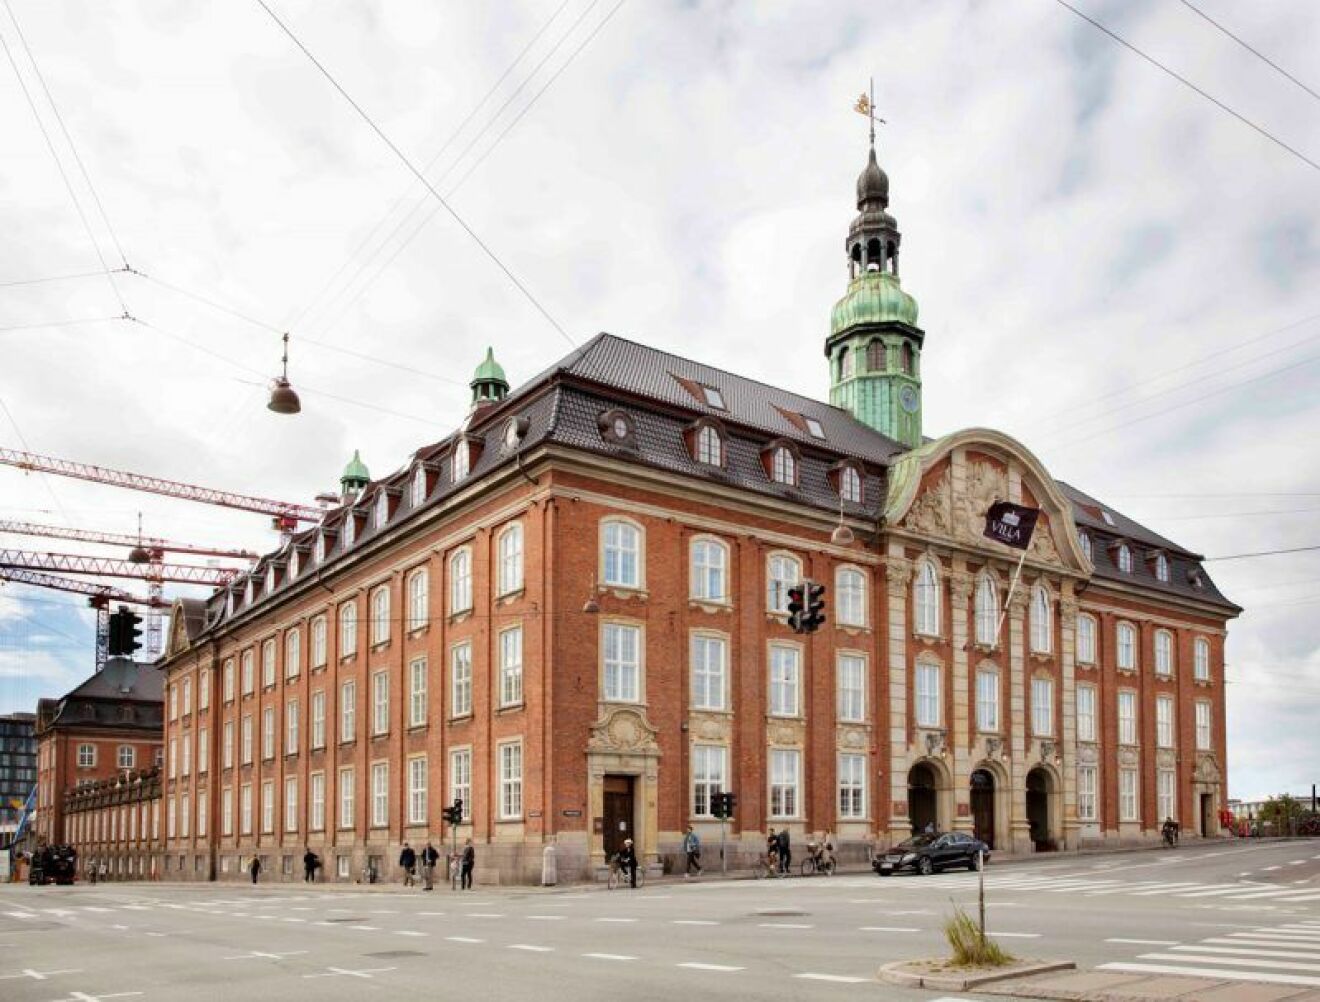 Köpenhamn hotell villa copenhagen fasad